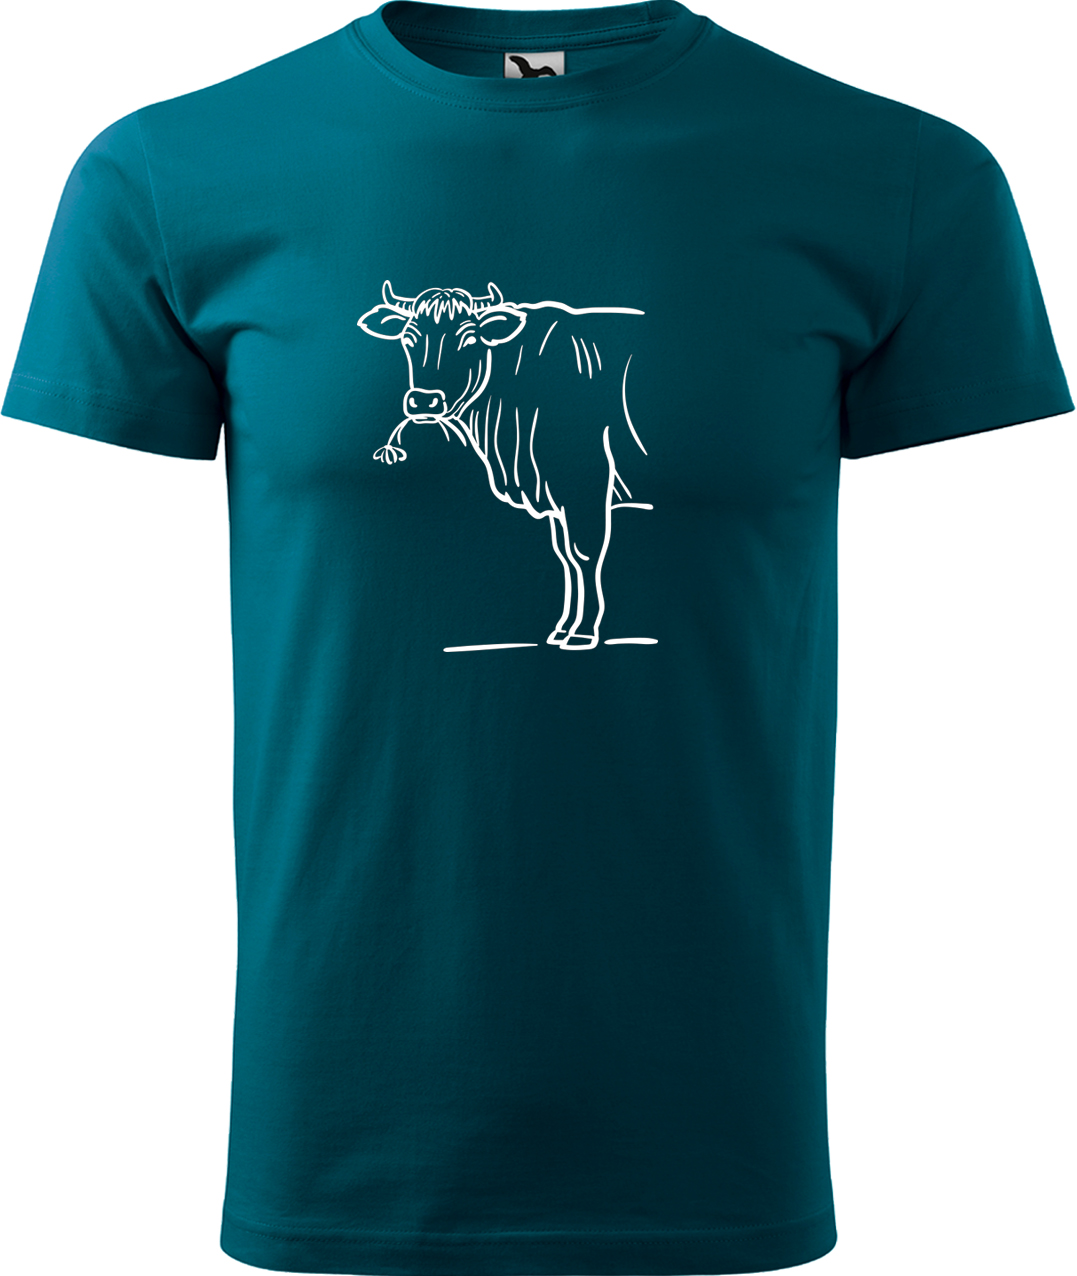 Pánské tričko s krávou - Býk Velikost: S, Barva: Petrolejová (93), Střih: pánský